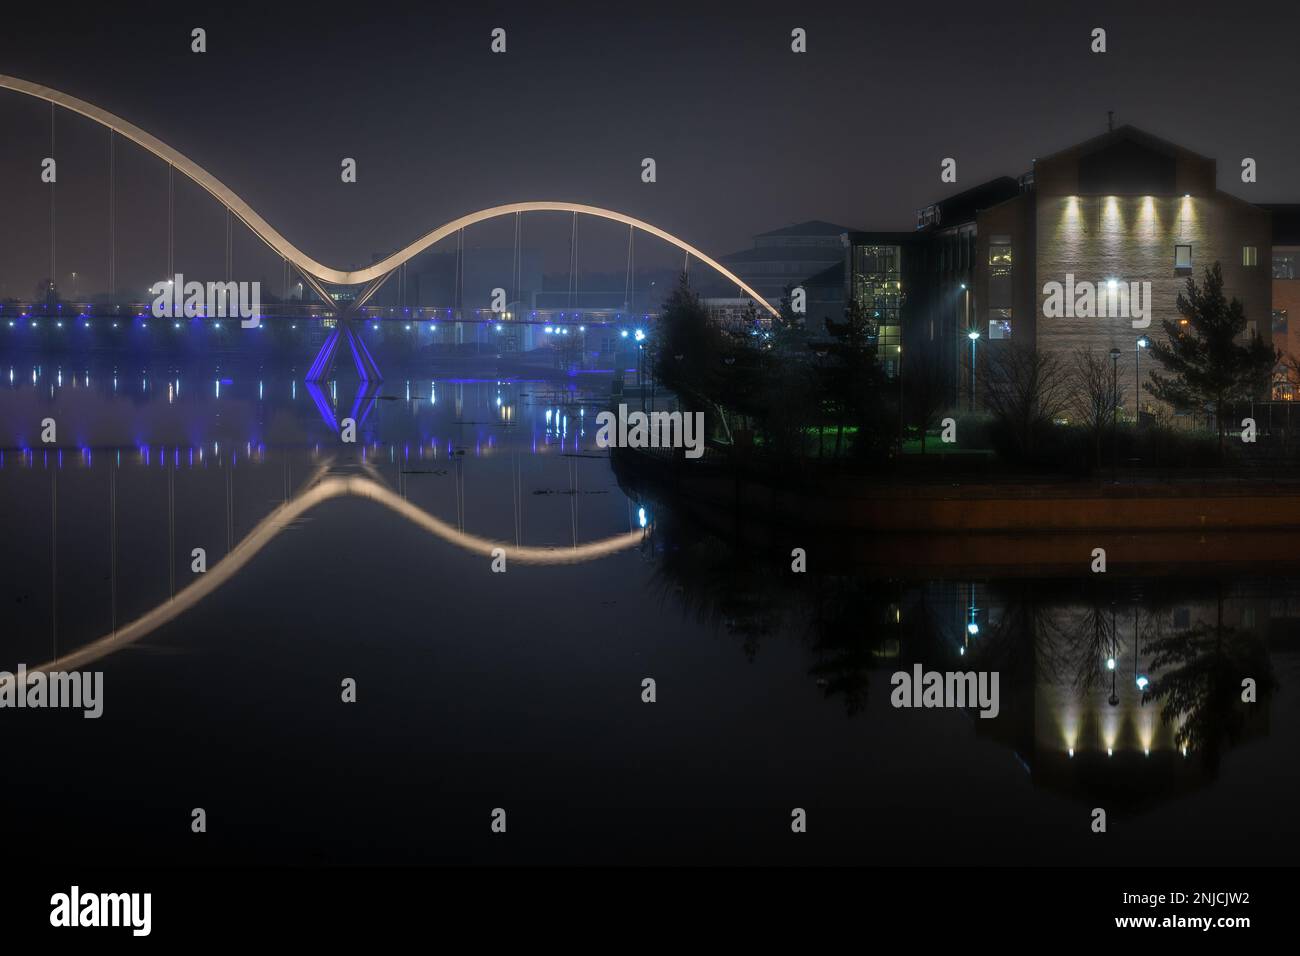 Le pont Infinity Bridge s'est illuminé lors d'une soirée brumeuse Banque D'Images